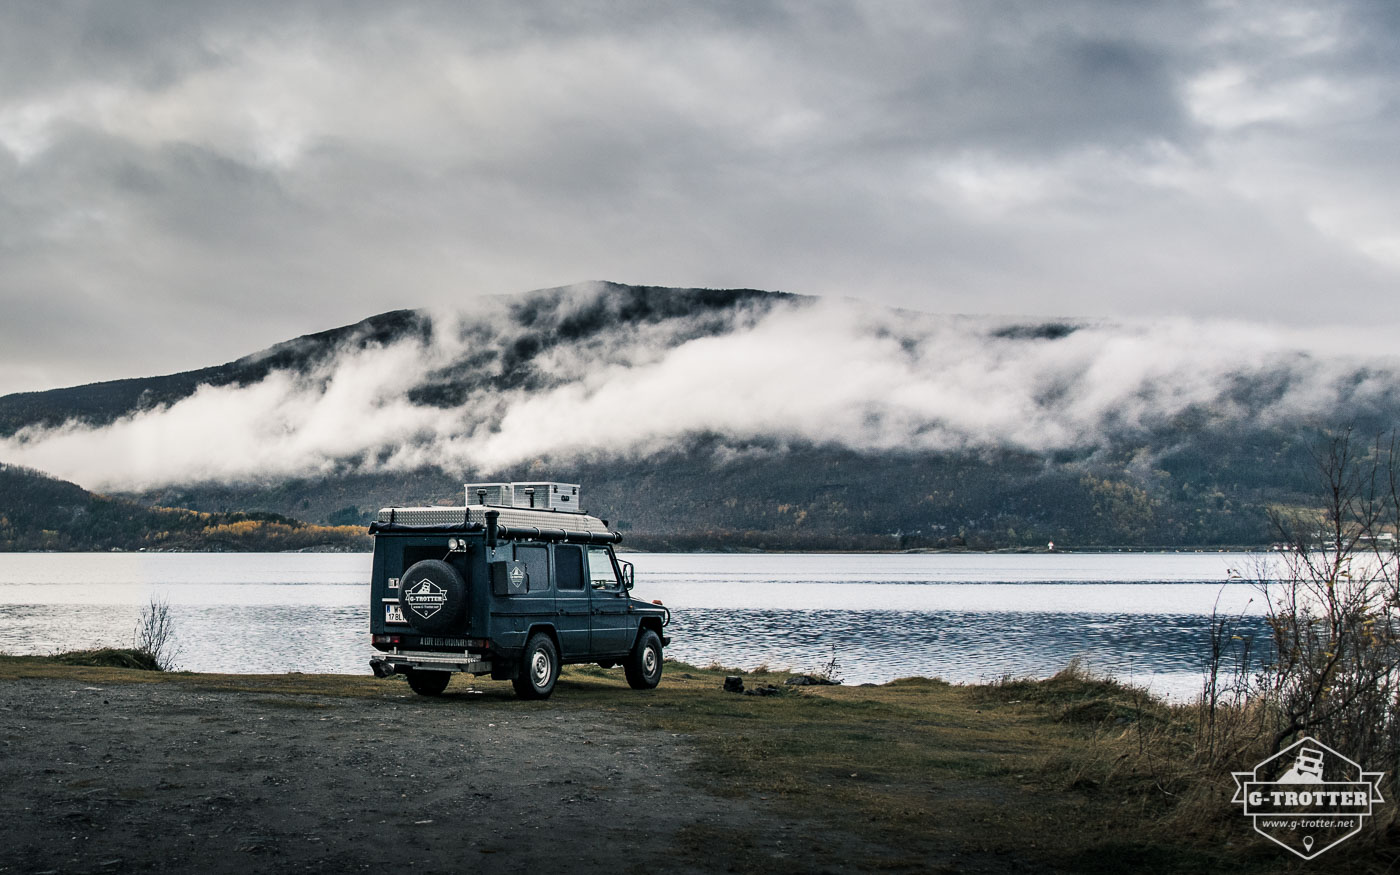 Bild 21 der Bildergalerie “4700 km durch Norwegen”